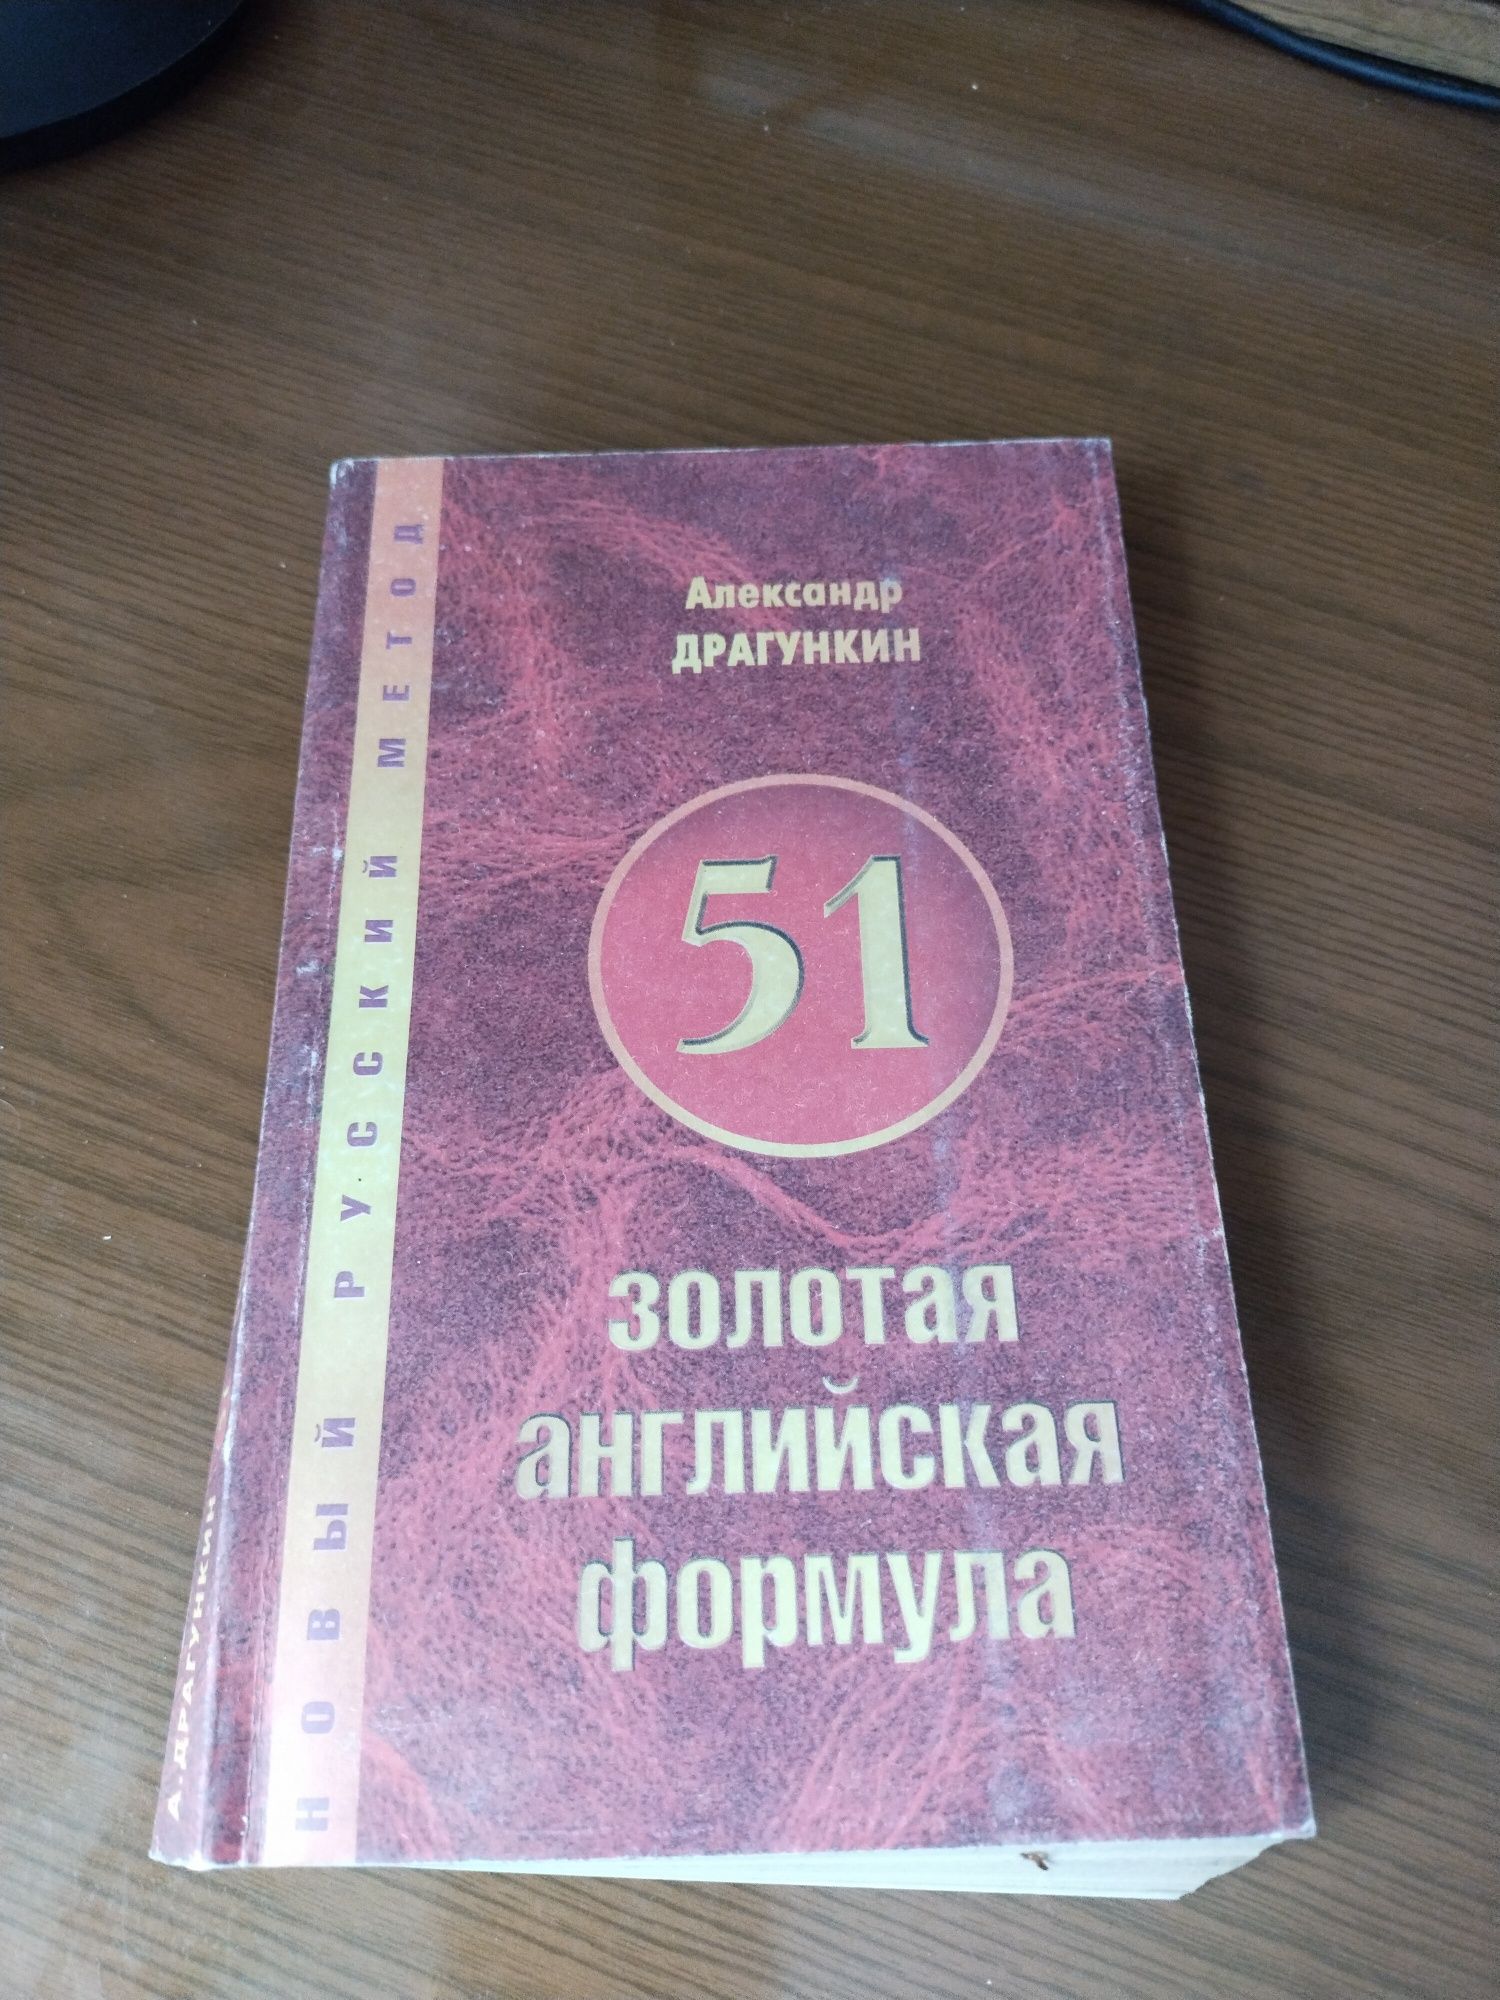 Продаем словари англо русский и русско английский.